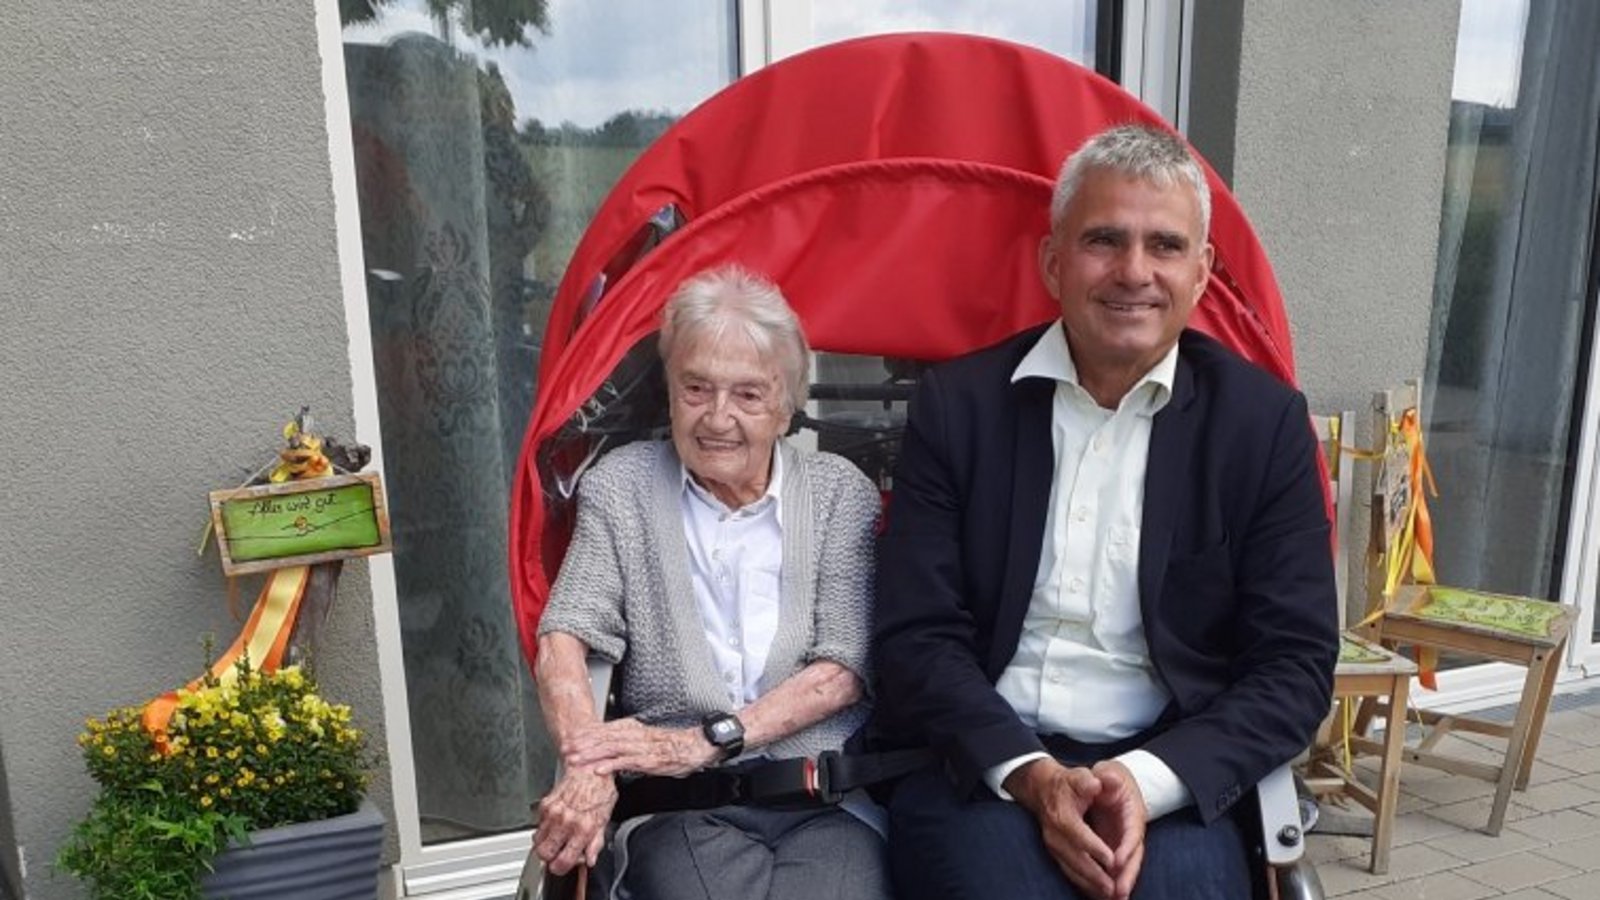 Rikschafahrt mit dem Bürgermeister: Johanna Paret aus Sachsenheim wurde gestern 100 Jahre alt.  Foto: Glemser